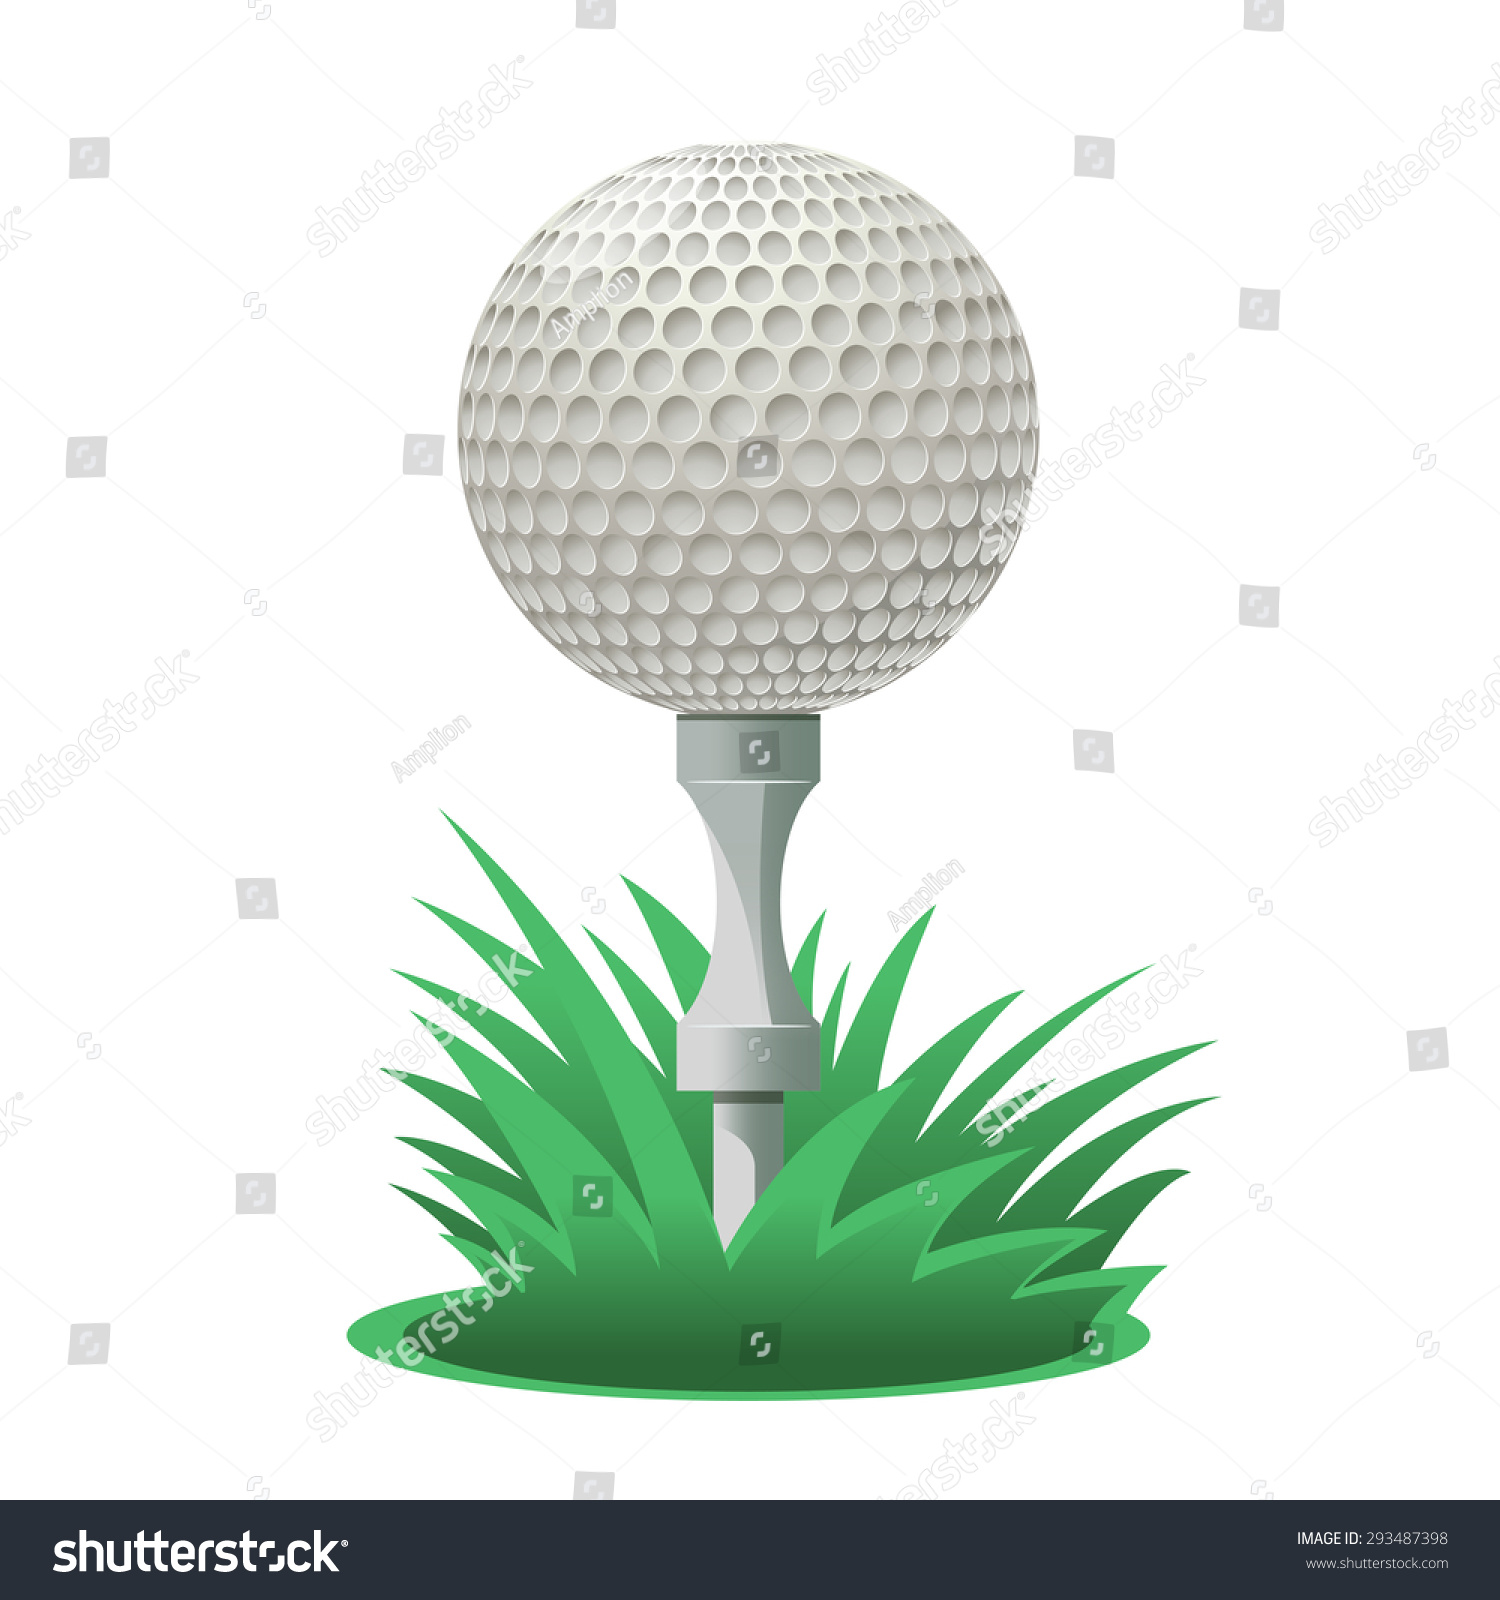 Image Of A Cartoon Golf Ball Stock Photo 293487398 : Shutterstock